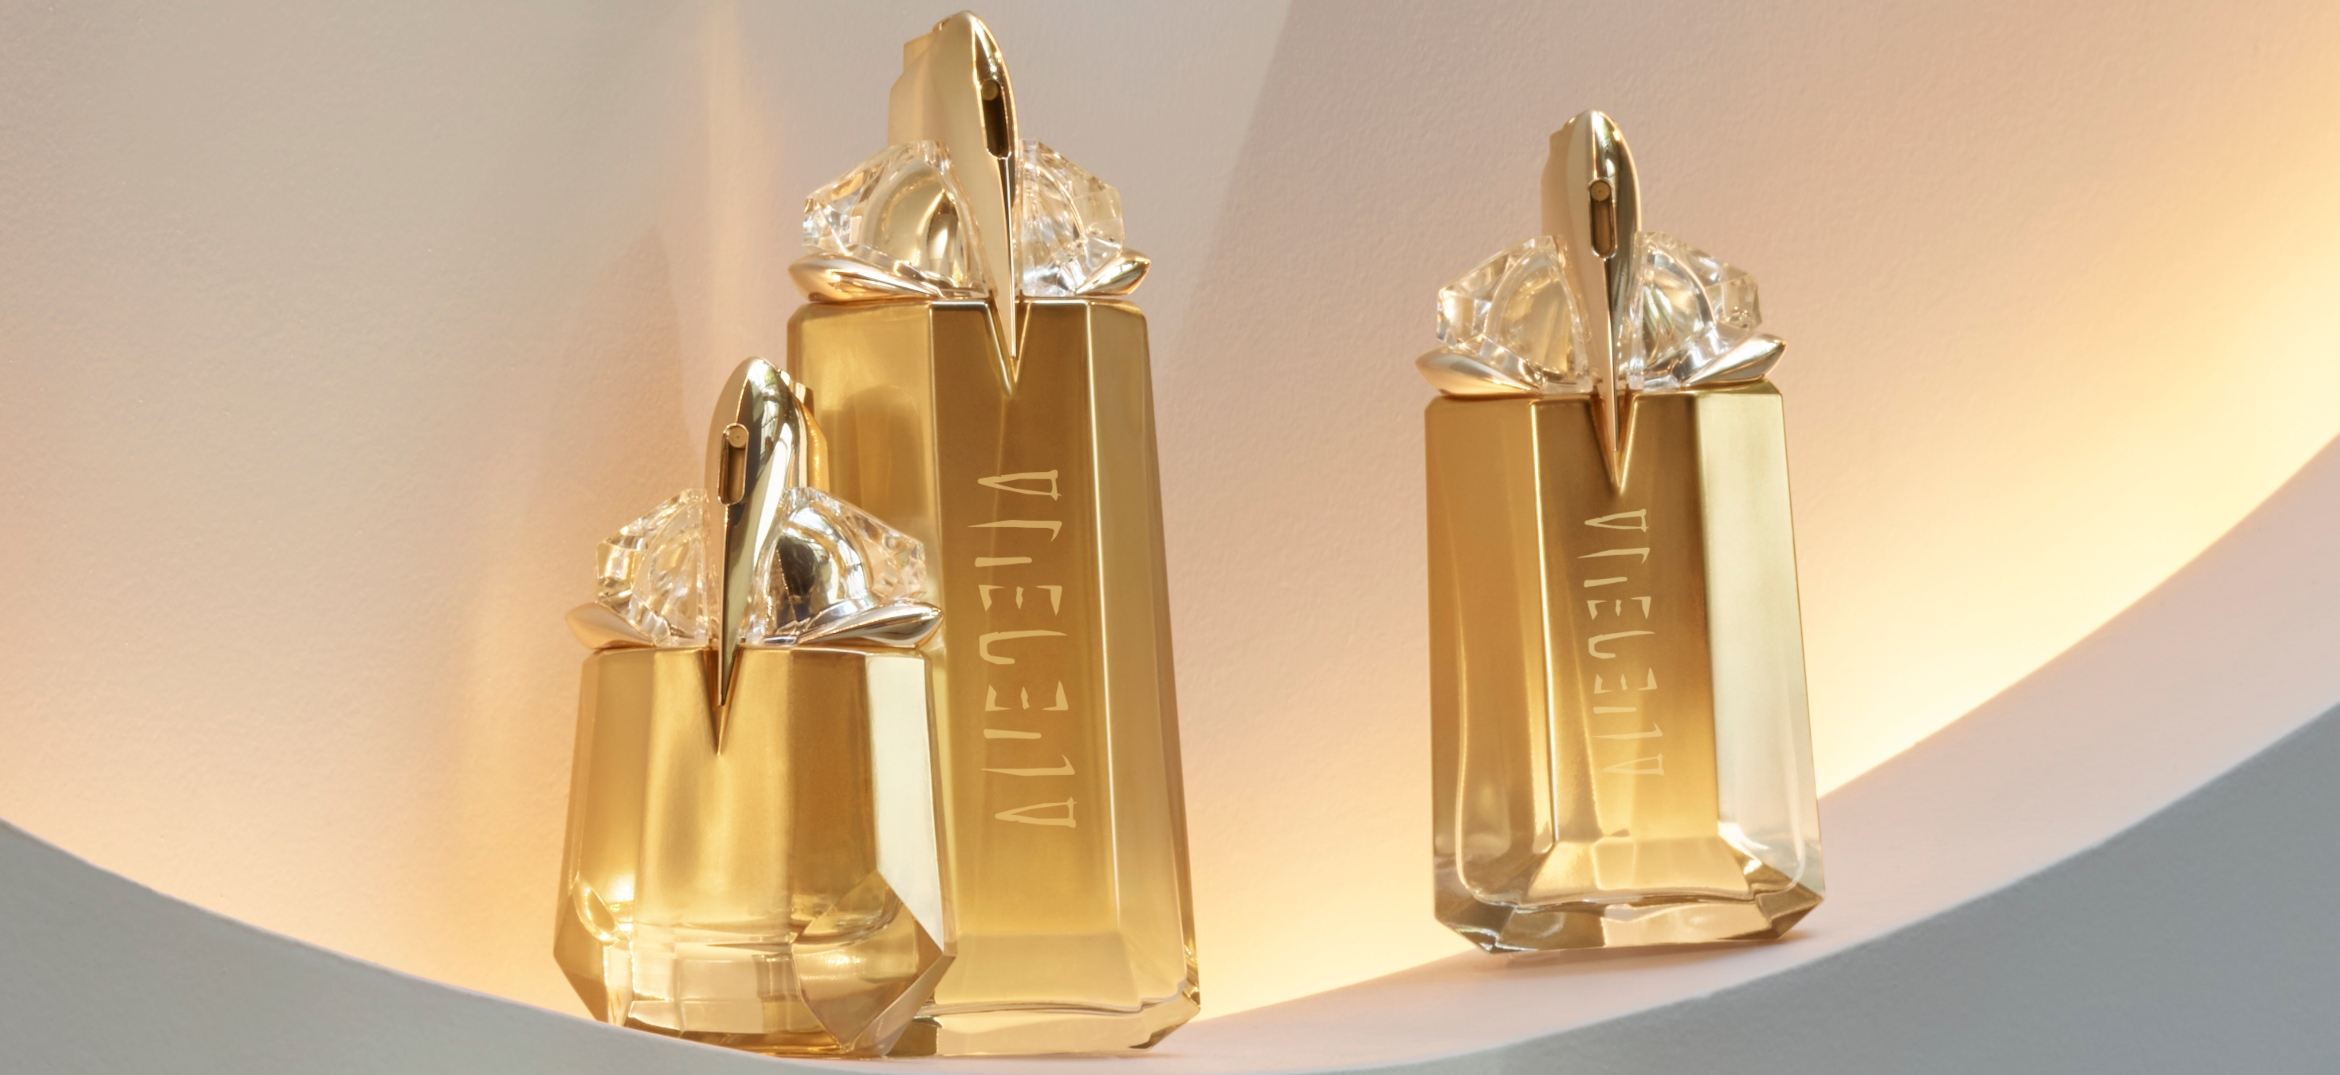 Alien Goddess secrets: The gold perfume bottle